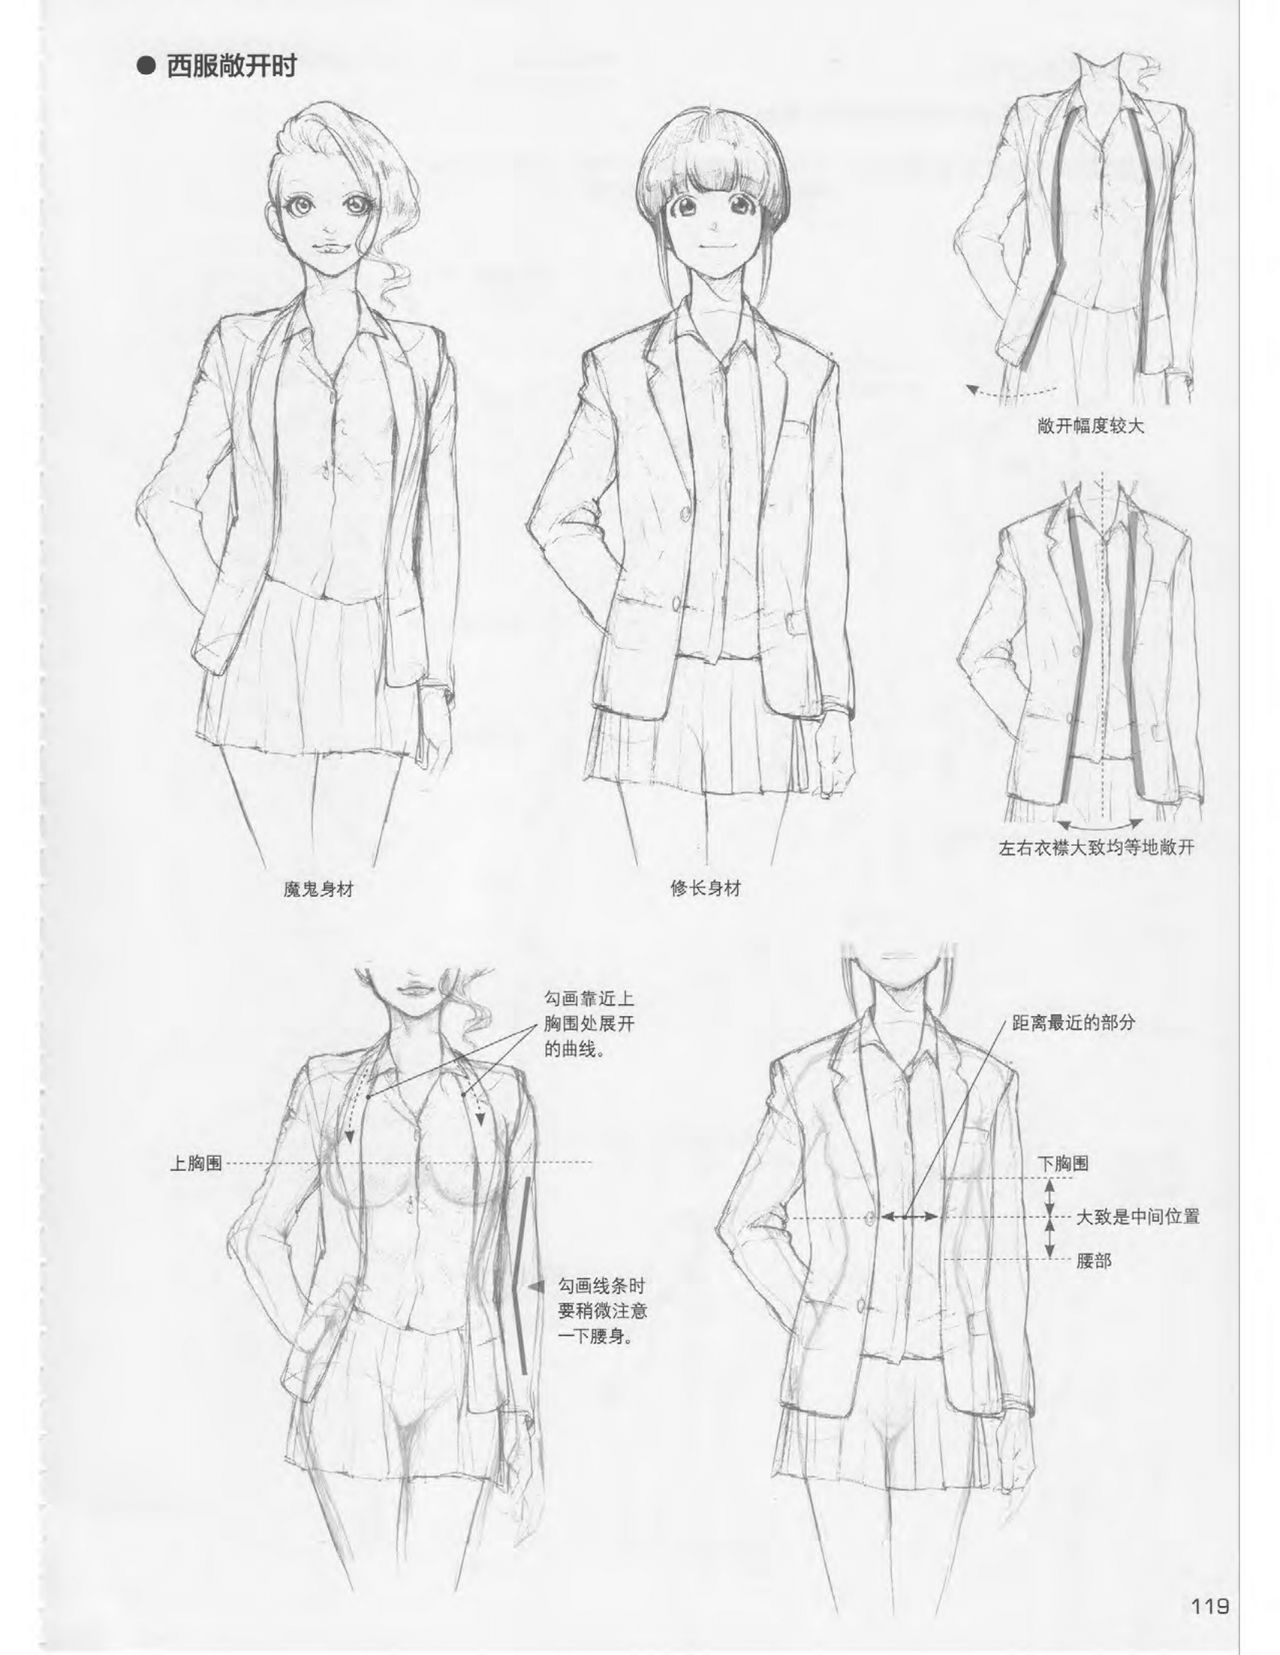 Japanese Manga Master Lecture 3: Lin Akira and Kakumaru Maru Talk About Glamorous Character Modeling 119